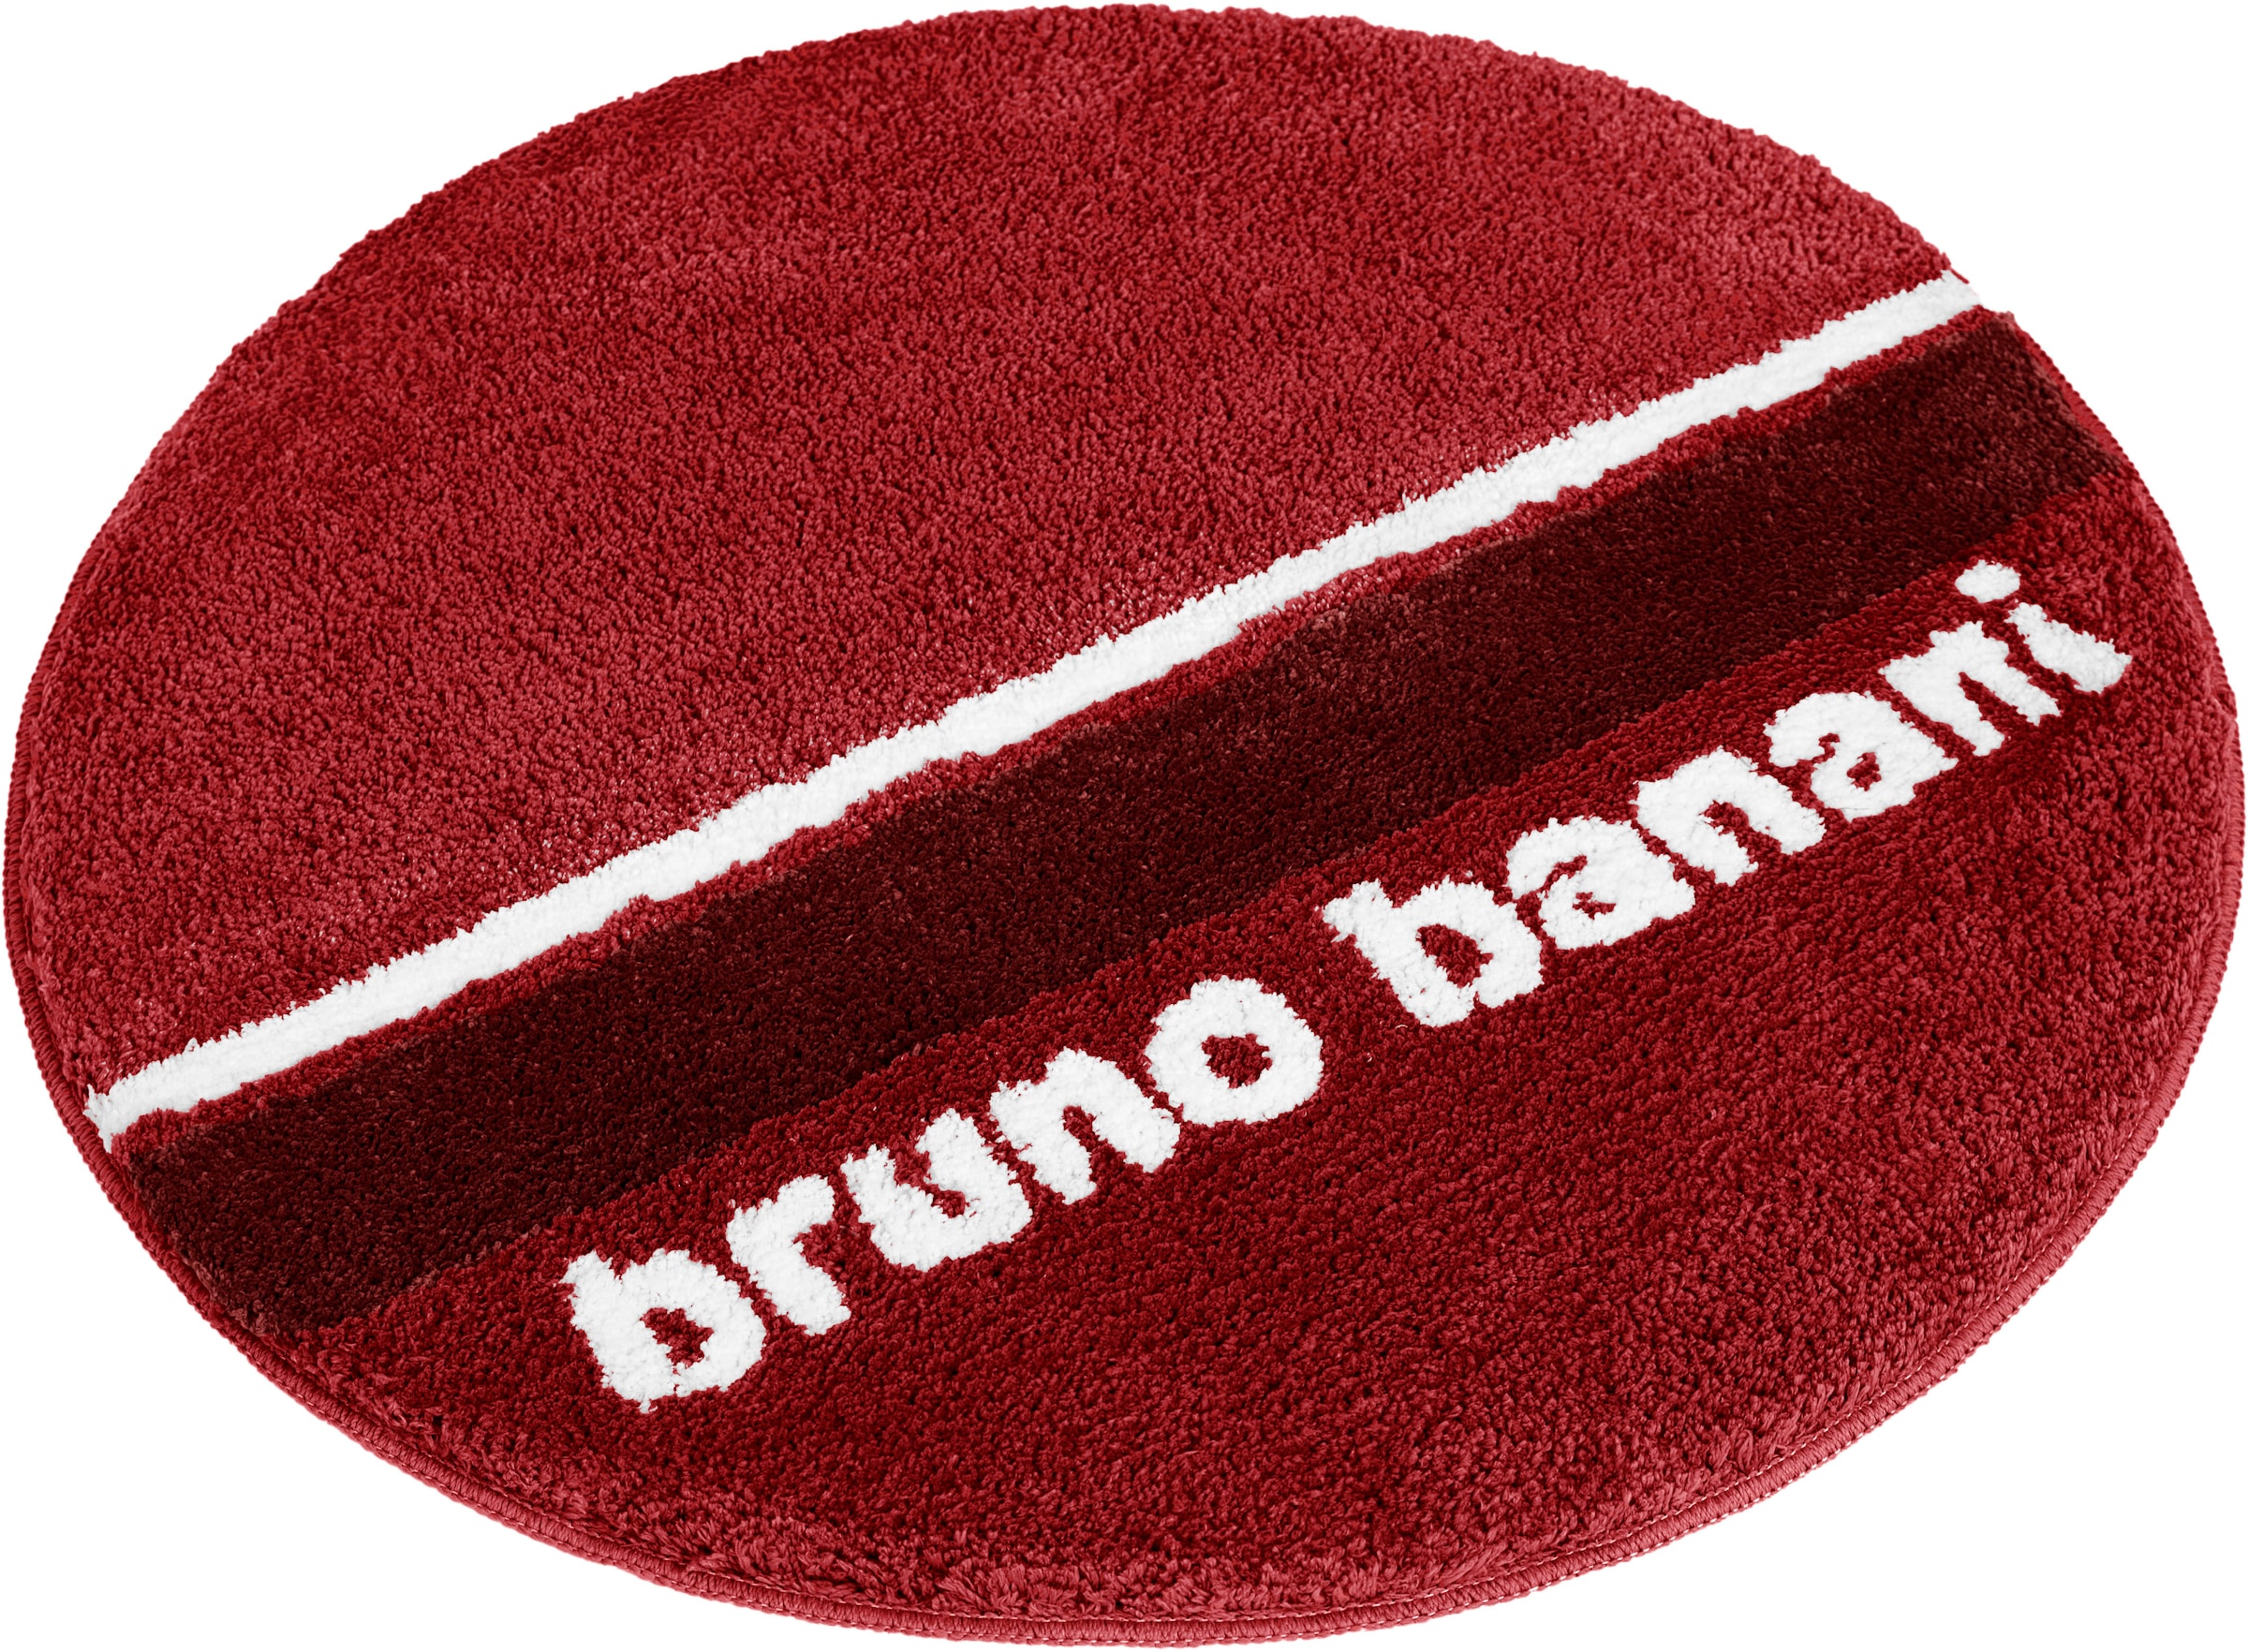 Bruno Banani Badematte »Maja«, Höhe 20 mm, rutschhemmend beschichtet, fussbodenheizungsgeeignet-strapazierfähig-schnell trocknend, weiche Haptik, mit Logo, Badematten auch als 3 teiliges Set erhältlich